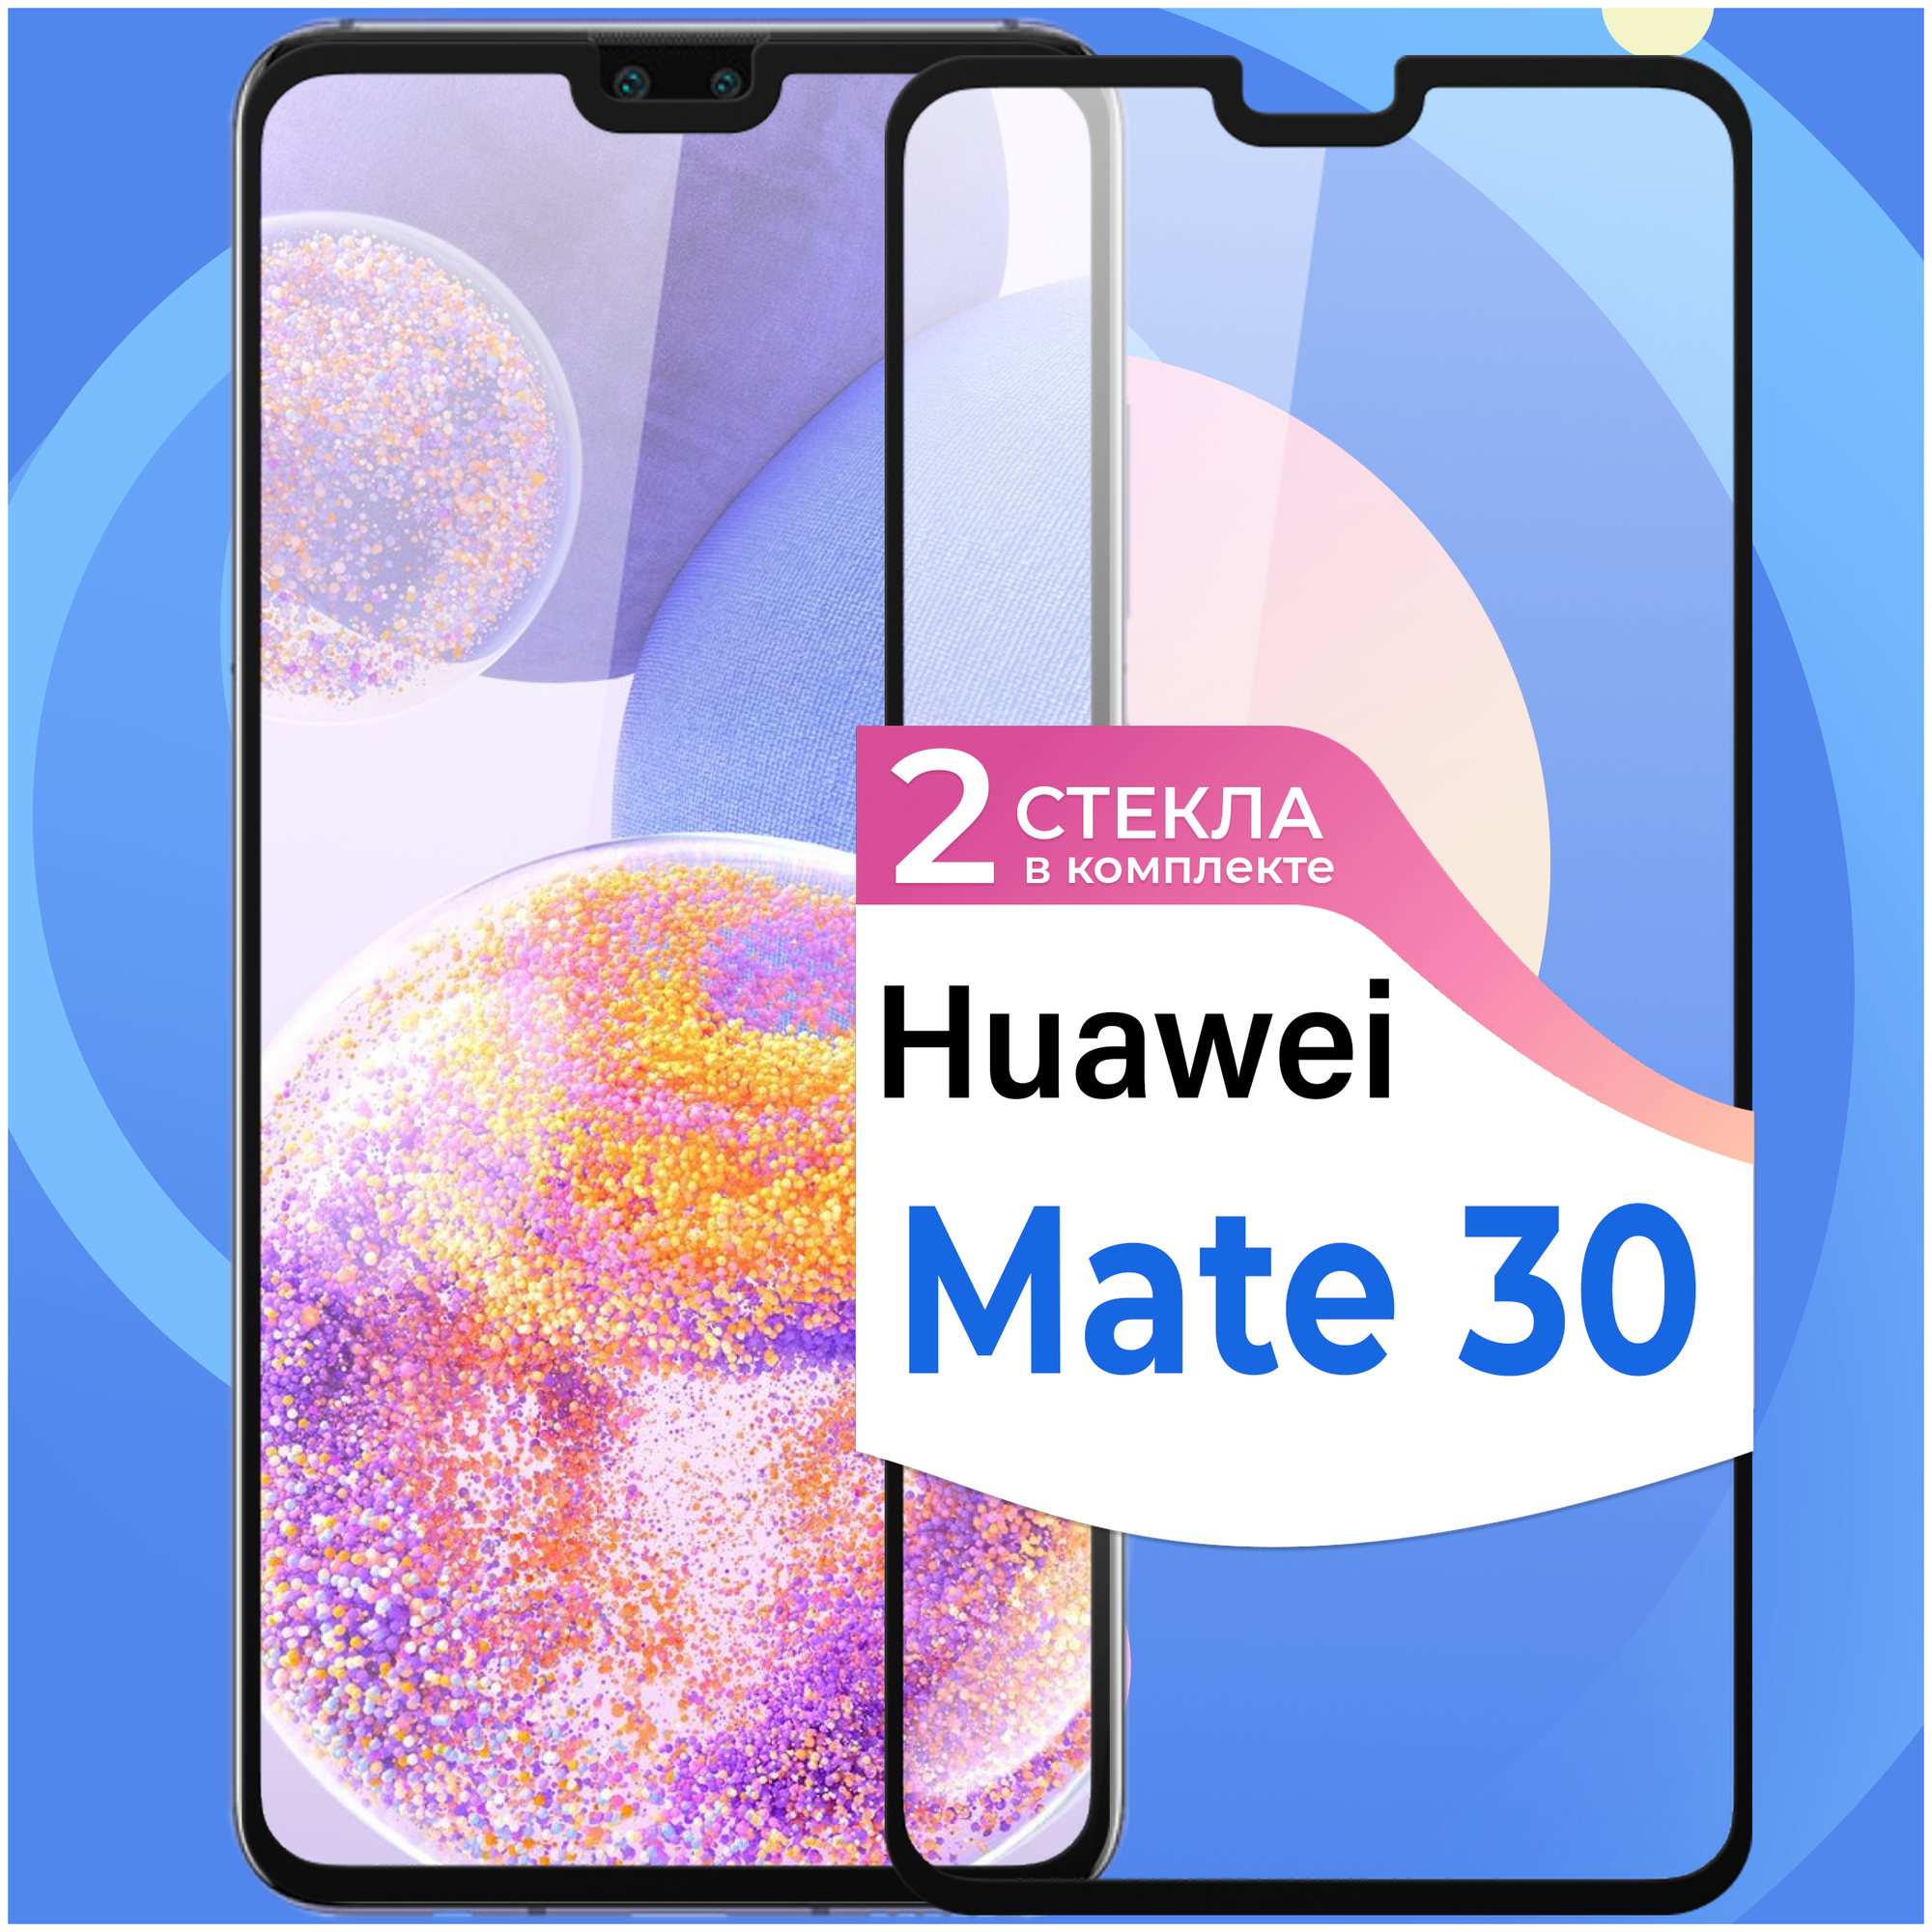 Противоударное защитное стекло для смартфона Huawei Mate 30 / Полноэкранное глянцевое стекло с олеофобным покрытием на телефон Хуавей Мате 30